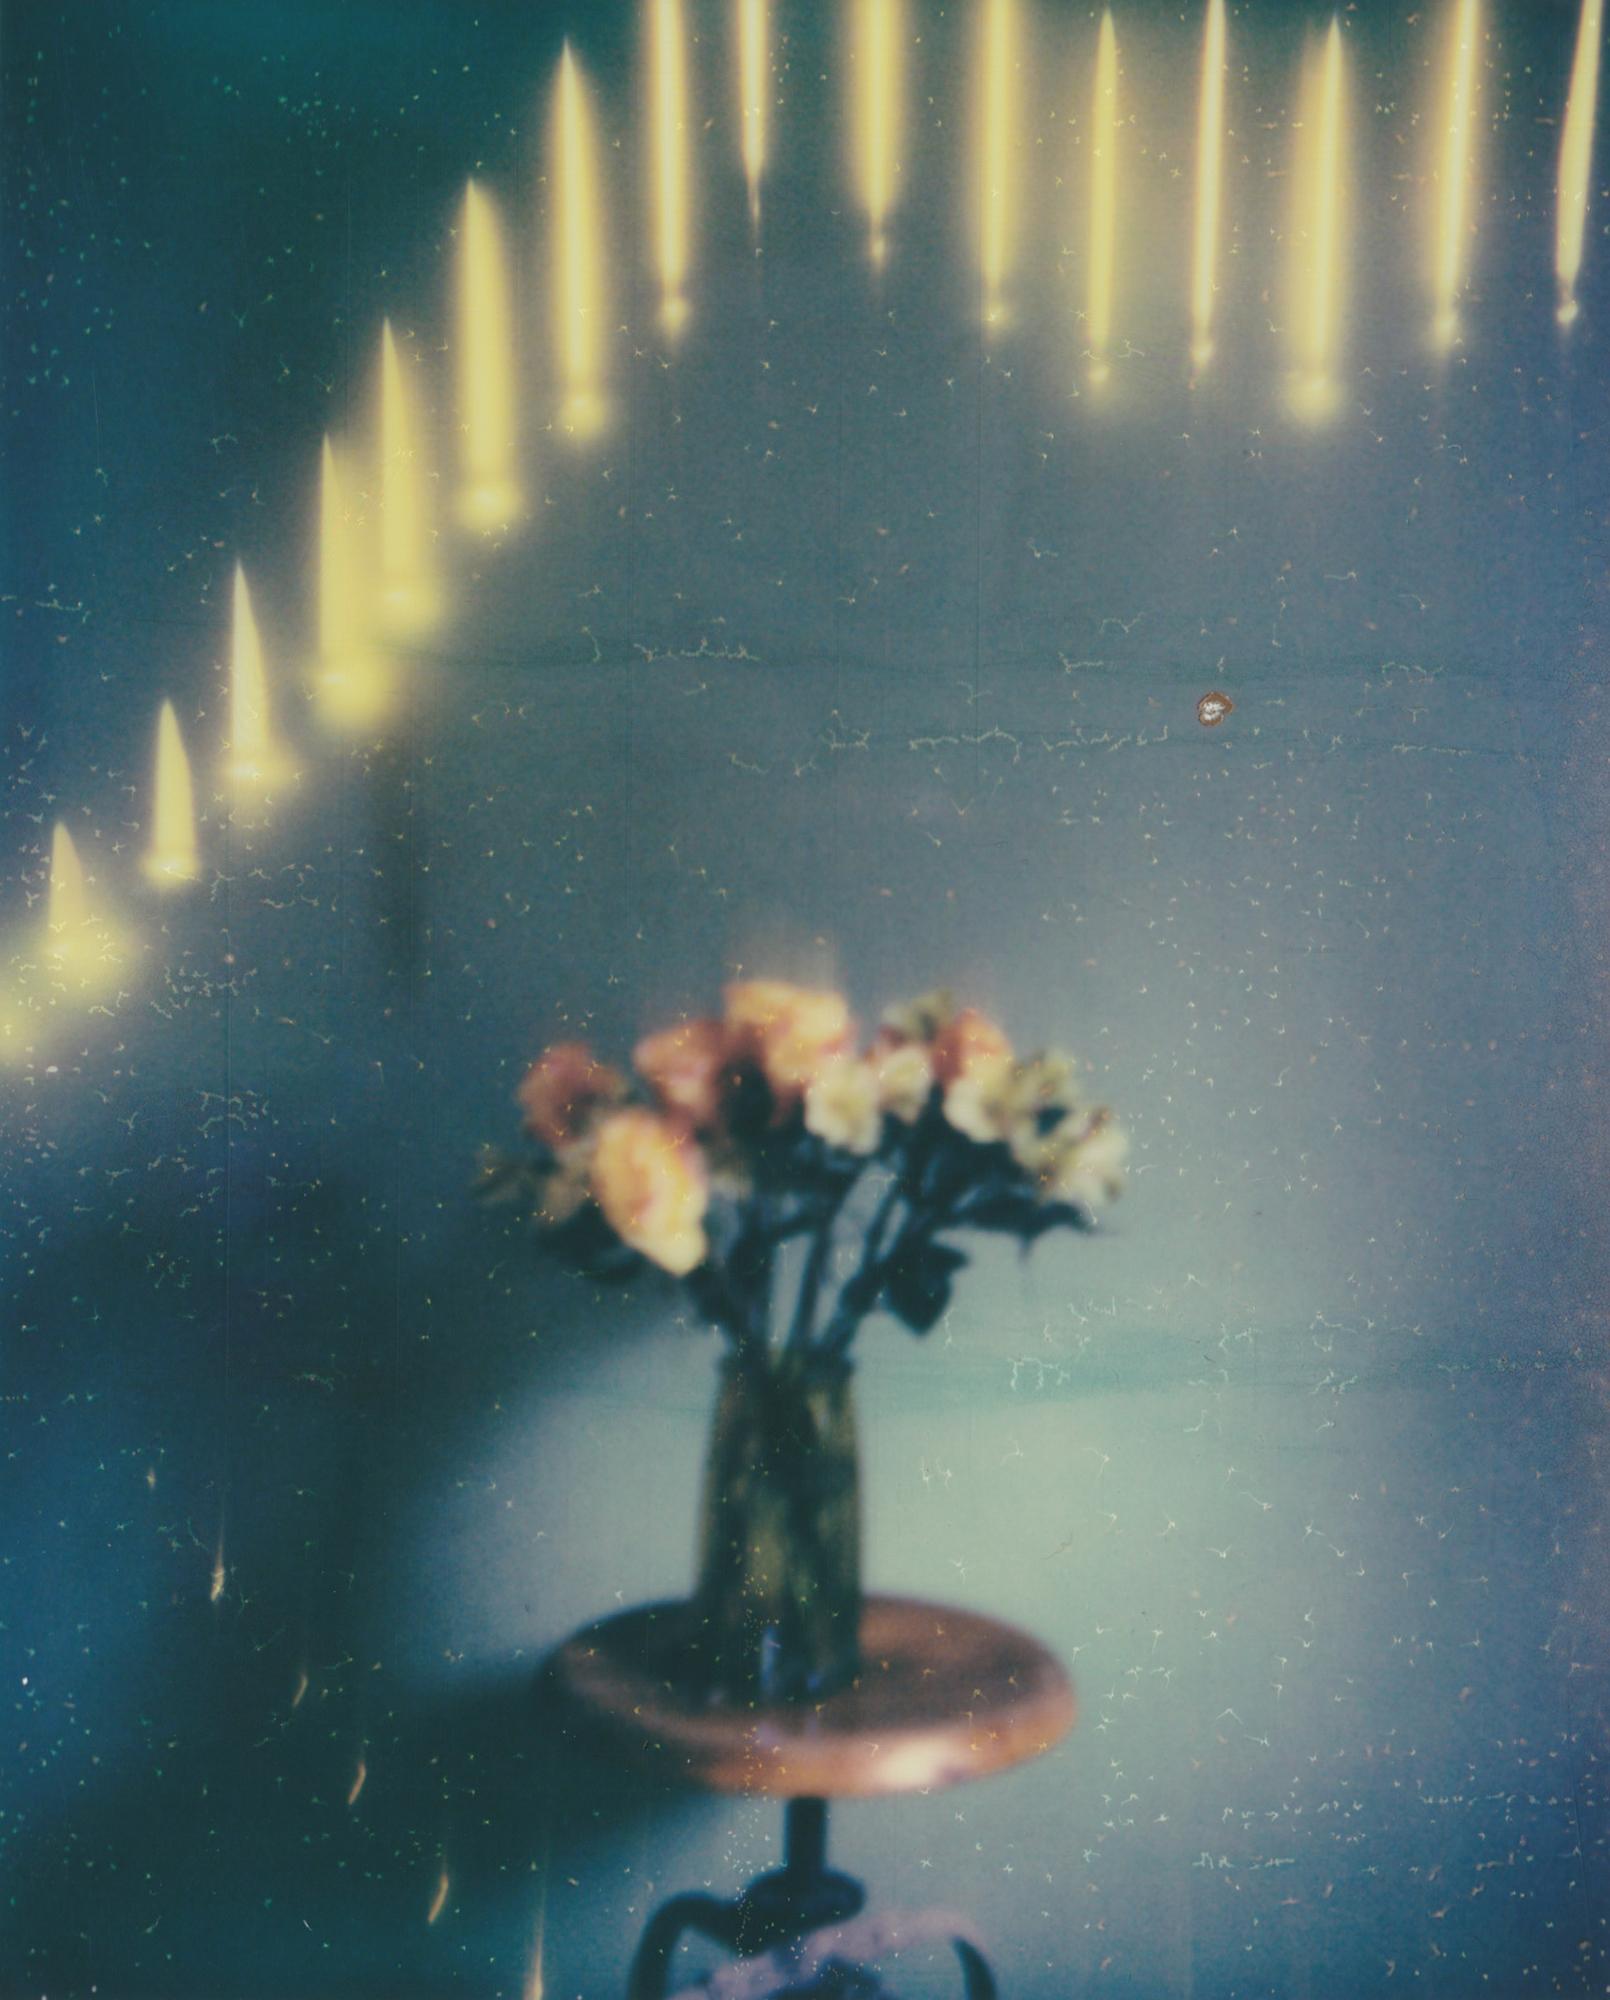 In Bloom - Contemporain, Femme, Polaroid, Peinture